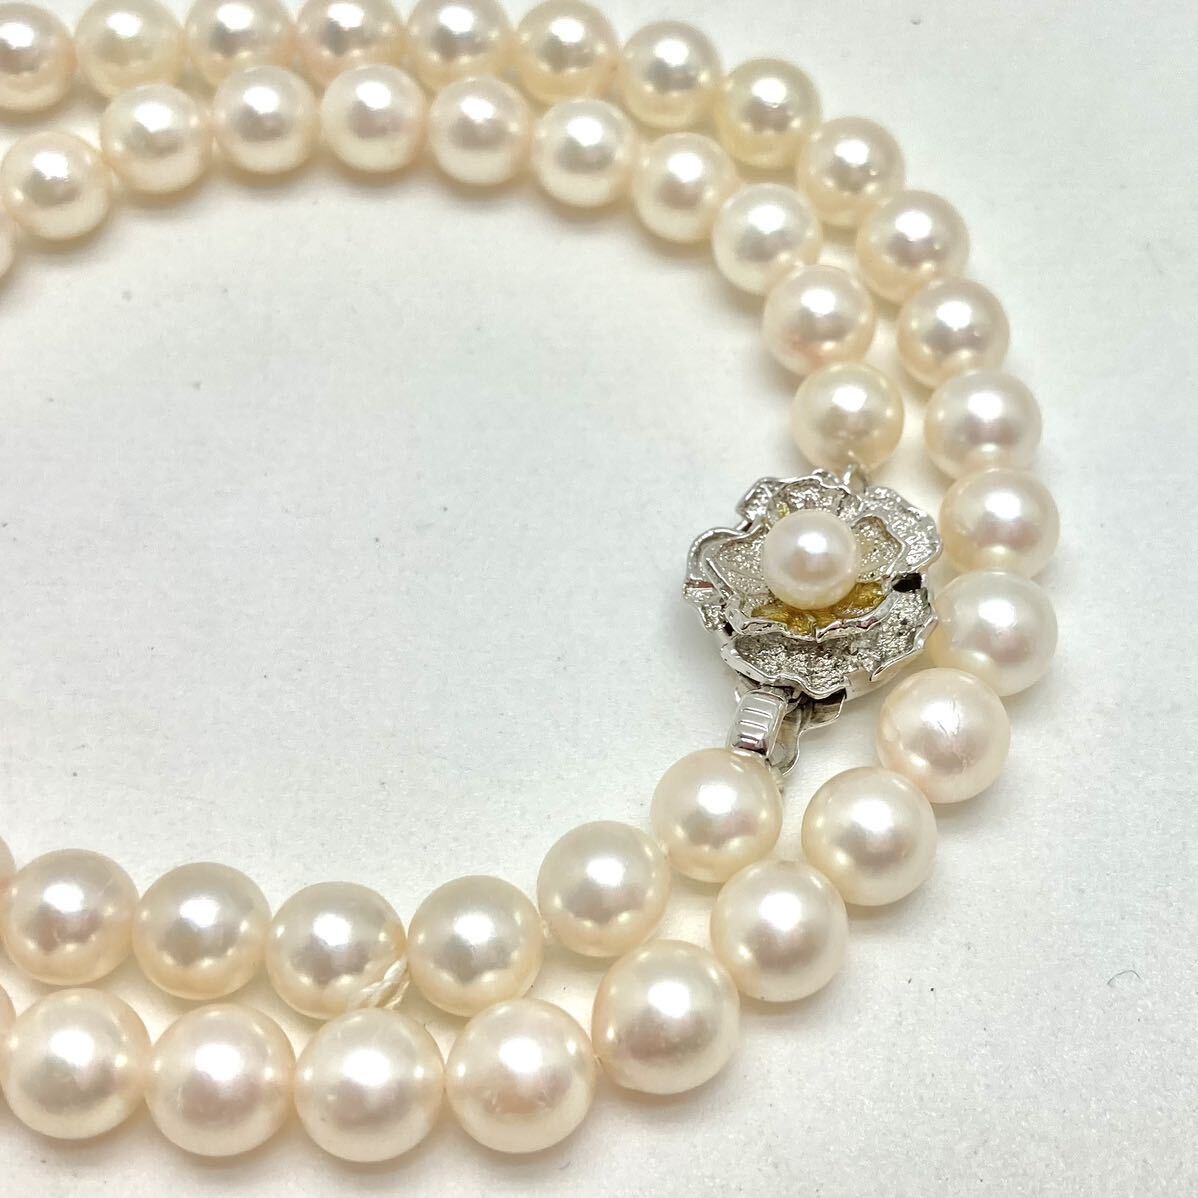 「アコヤ本真珠ネックレスおまとめ」m約29.1g 約6.5-7mmパール pearl necklace accessory jewelry silver DH0/DH0の画像2